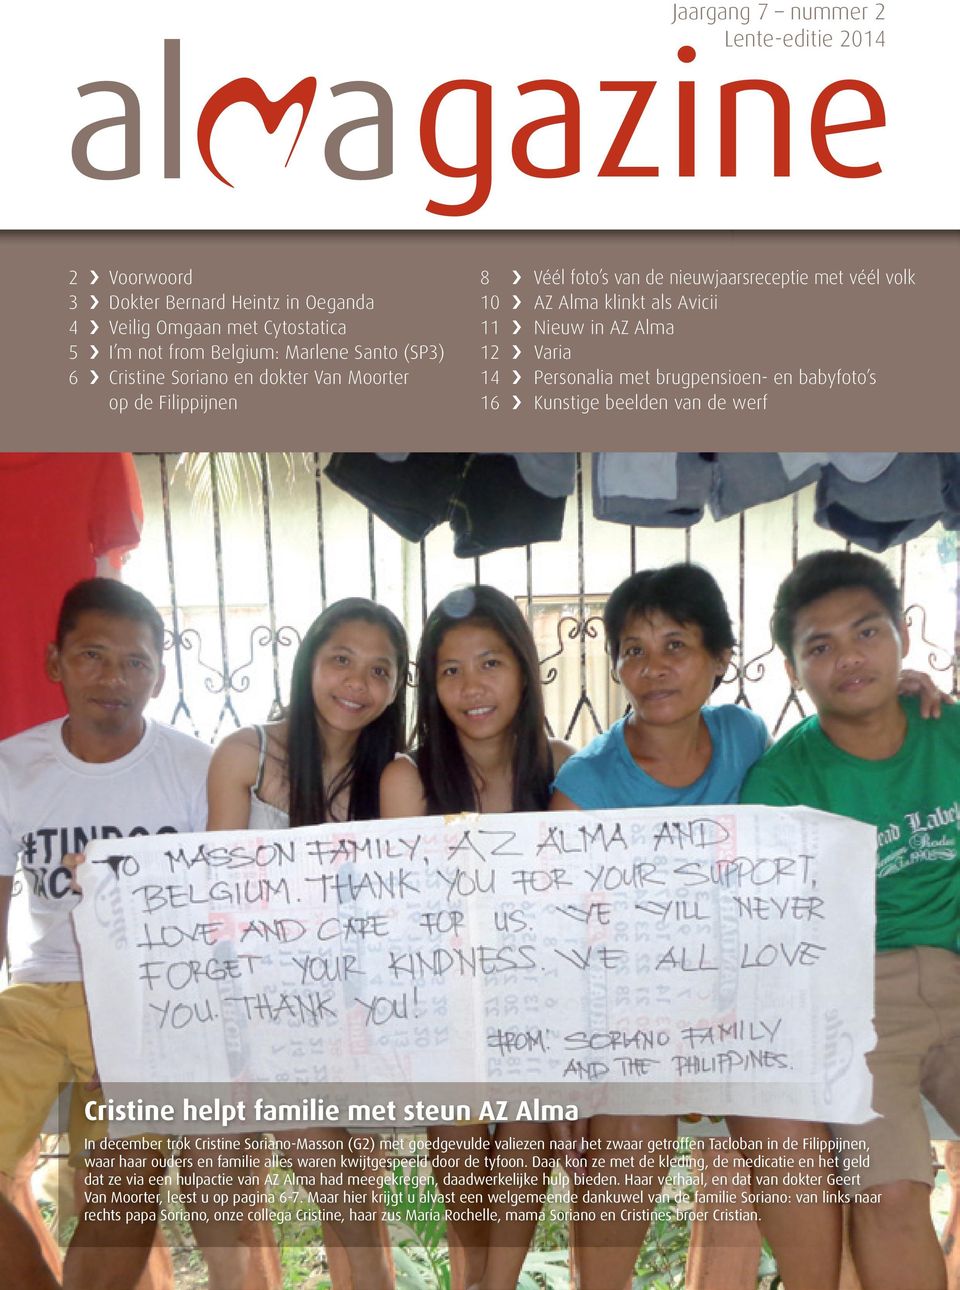 beelden van de werf Cristine helpt familie met steun AZ Alma In december trok Cristine Soriano-Masson (G2) met goedgevulde valiezen naar het zwaar getroffen Tacloban in de Filippijnen, waar haar